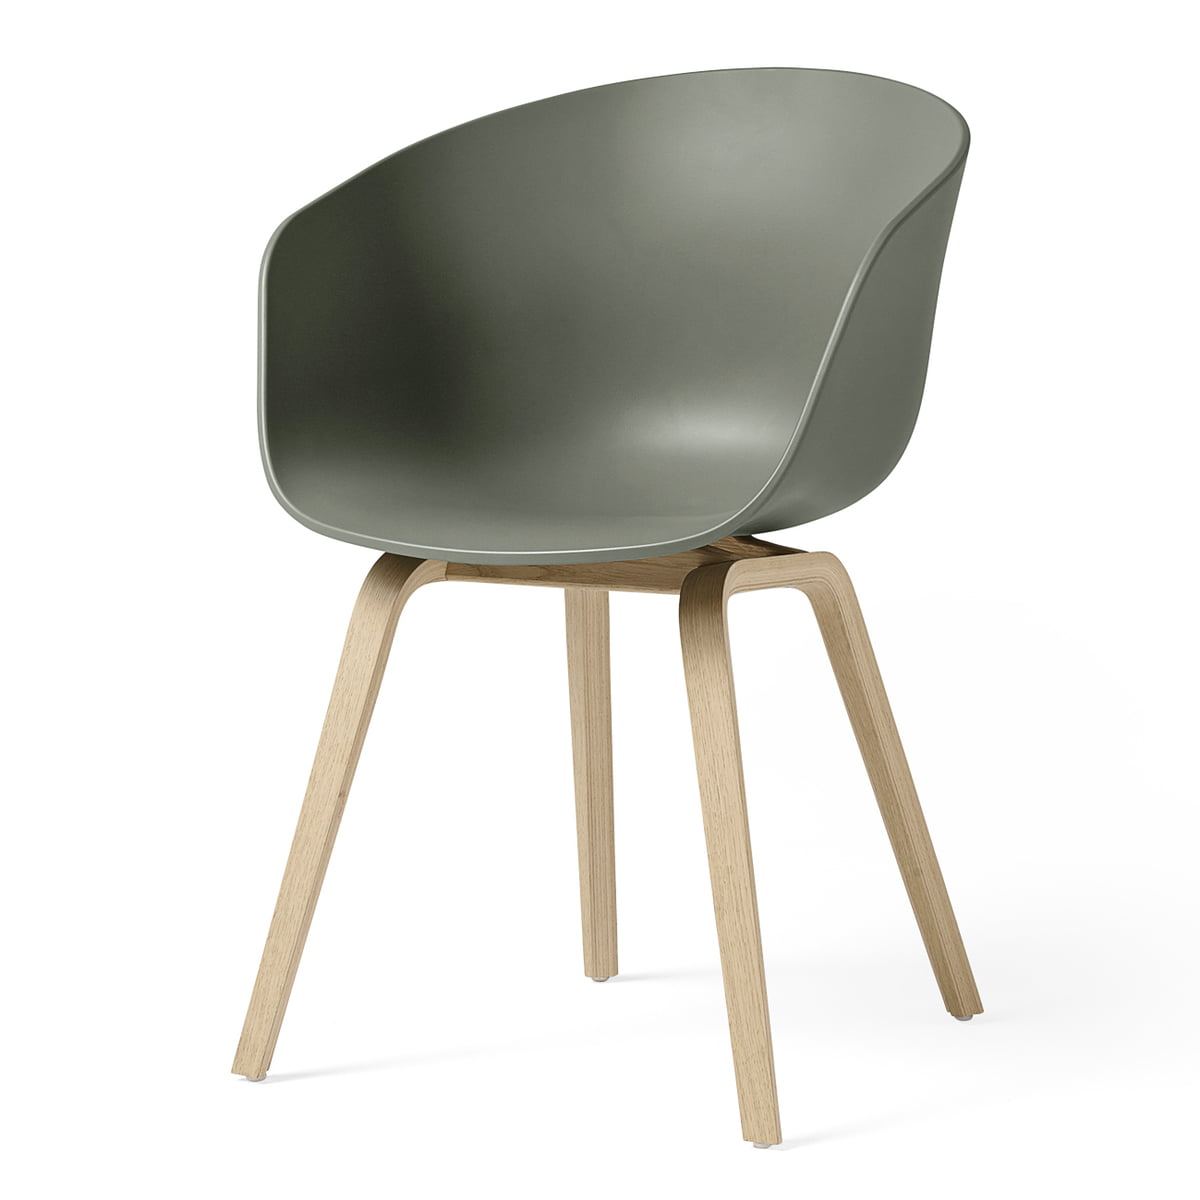 HAY - About A Chair AAC 22, Eiche matt lackiert / dusty green